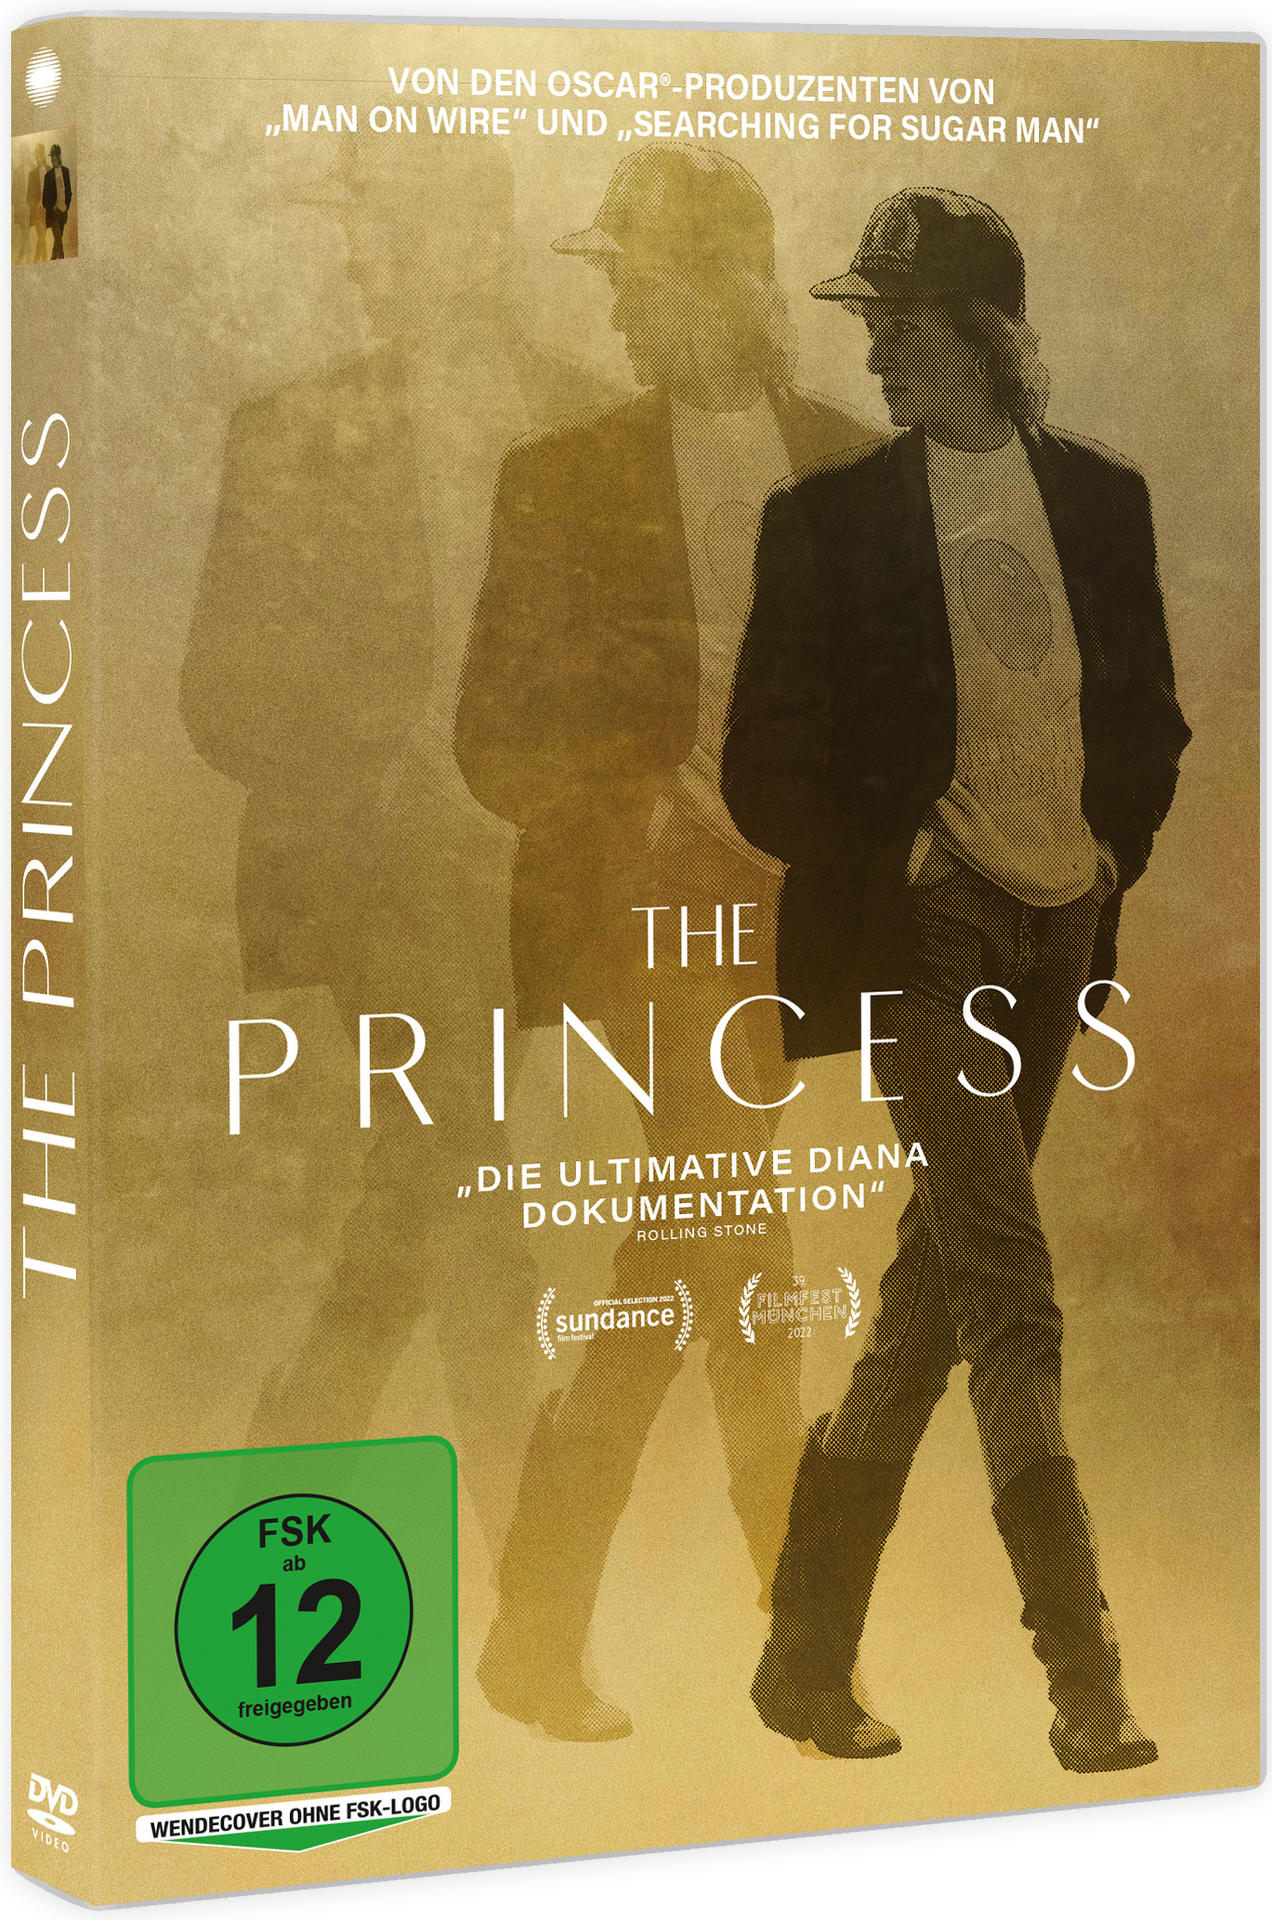 The DVD Princess